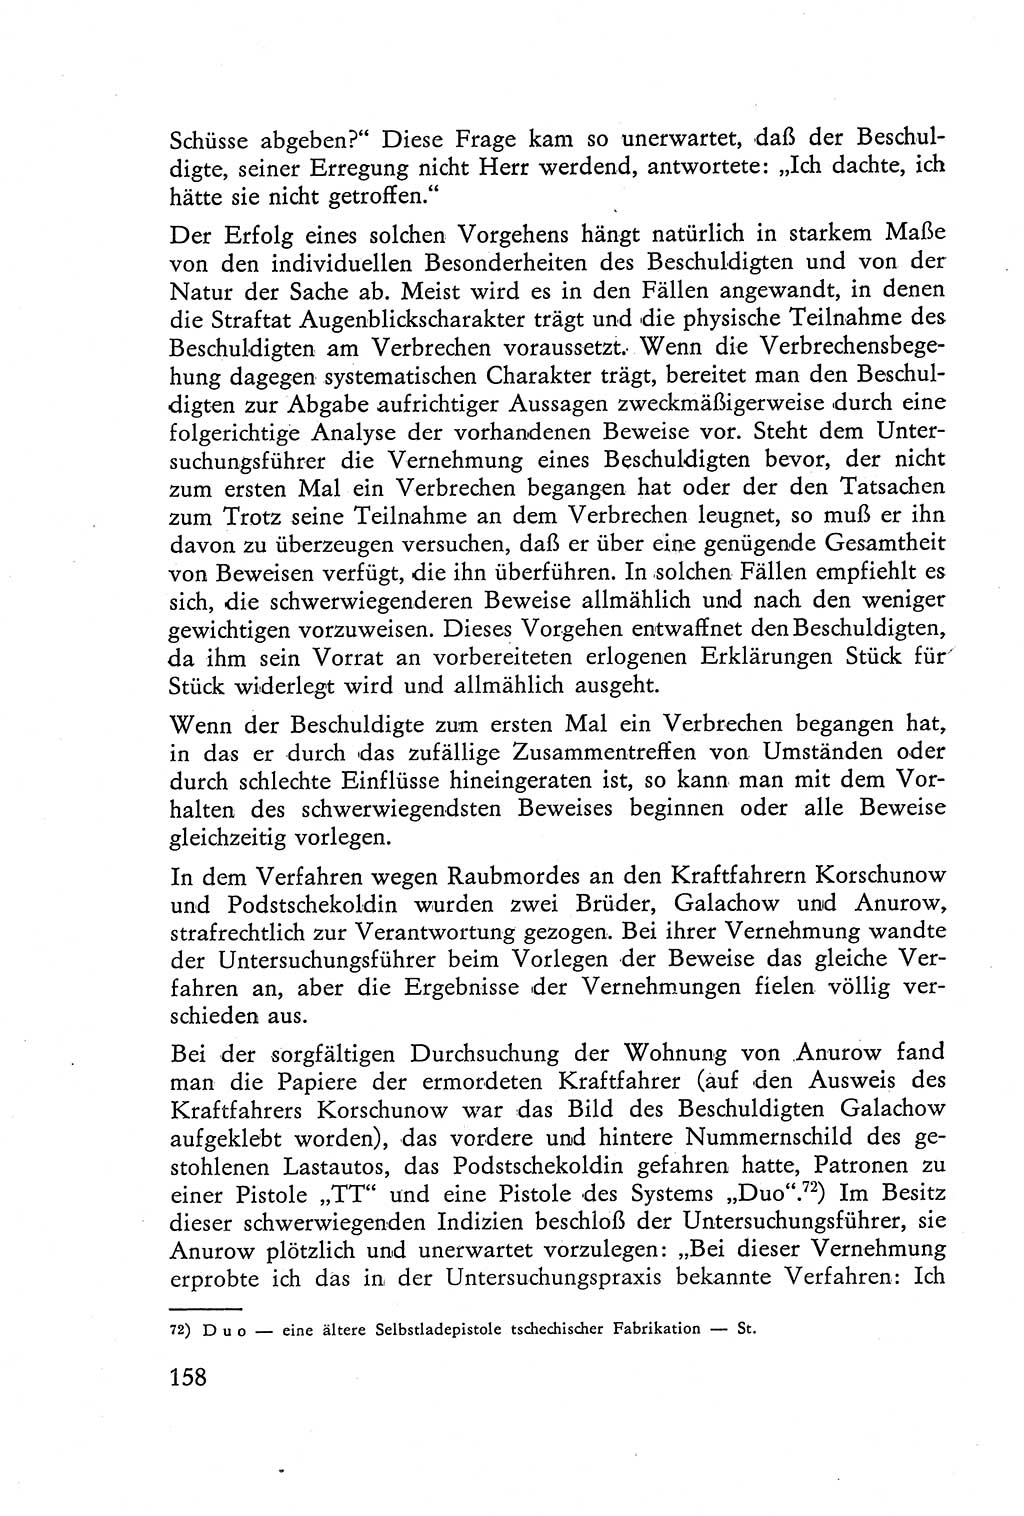 Die Vernehmung [Deutsche Demokratische Republik (DDR)] 1960, Seite 158 (Vern. DDR 1960, S. 158)